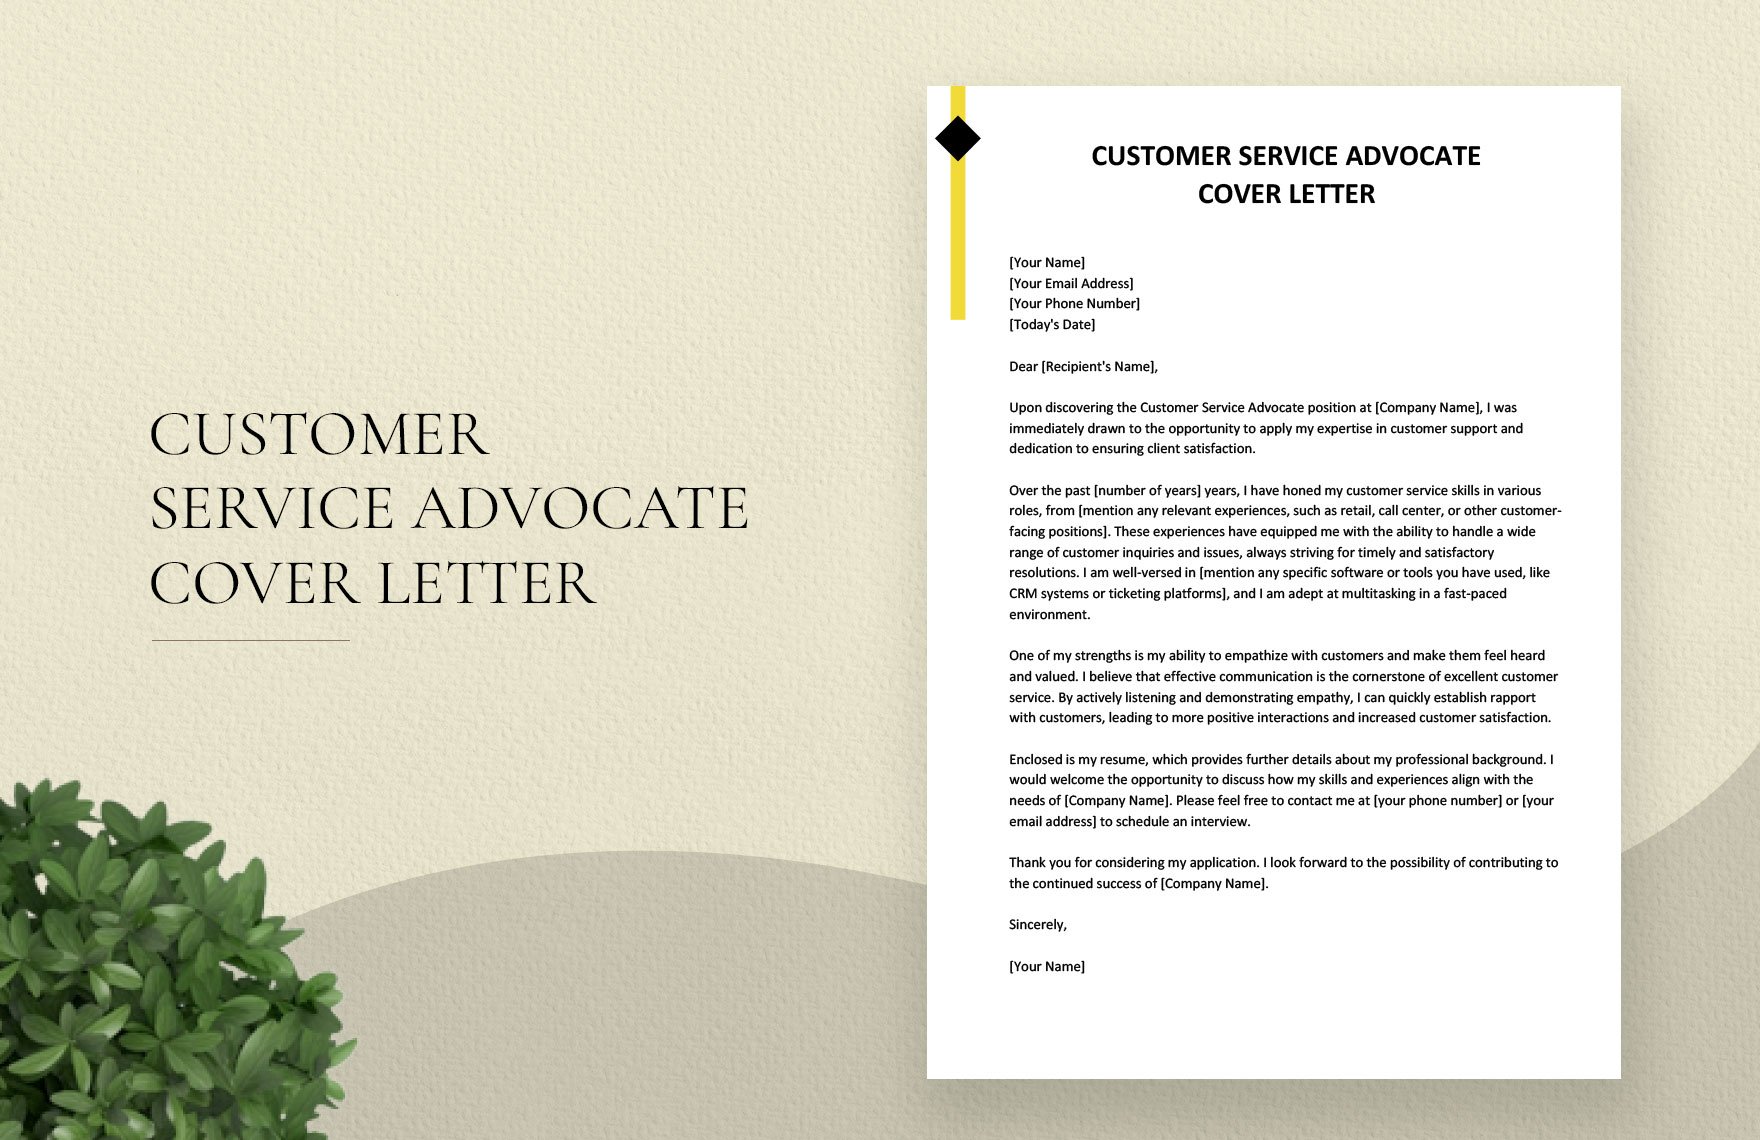 Customer Service Advocate Cover Letter